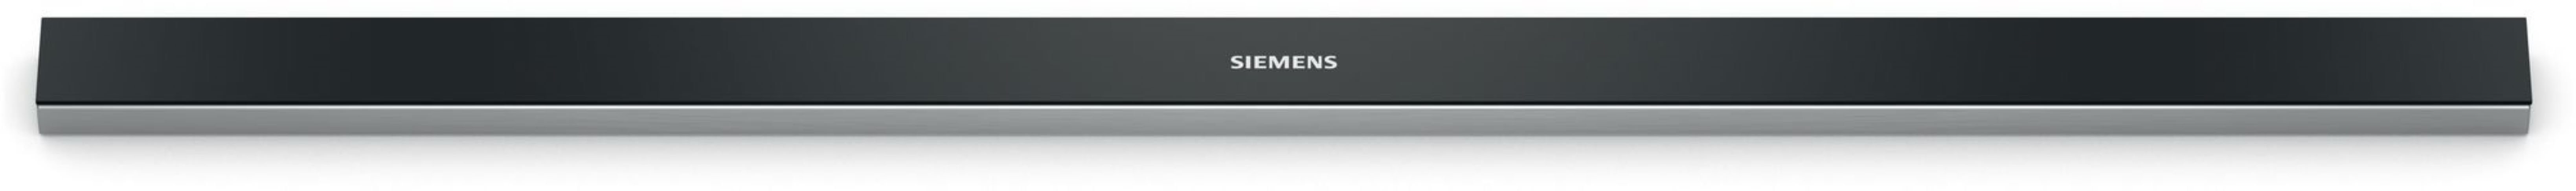 SIEMENS Montagezubehör Dunstabzugshaube LZ49561 Griffleiste Schwarz 90 cm für Flachschirmhauben